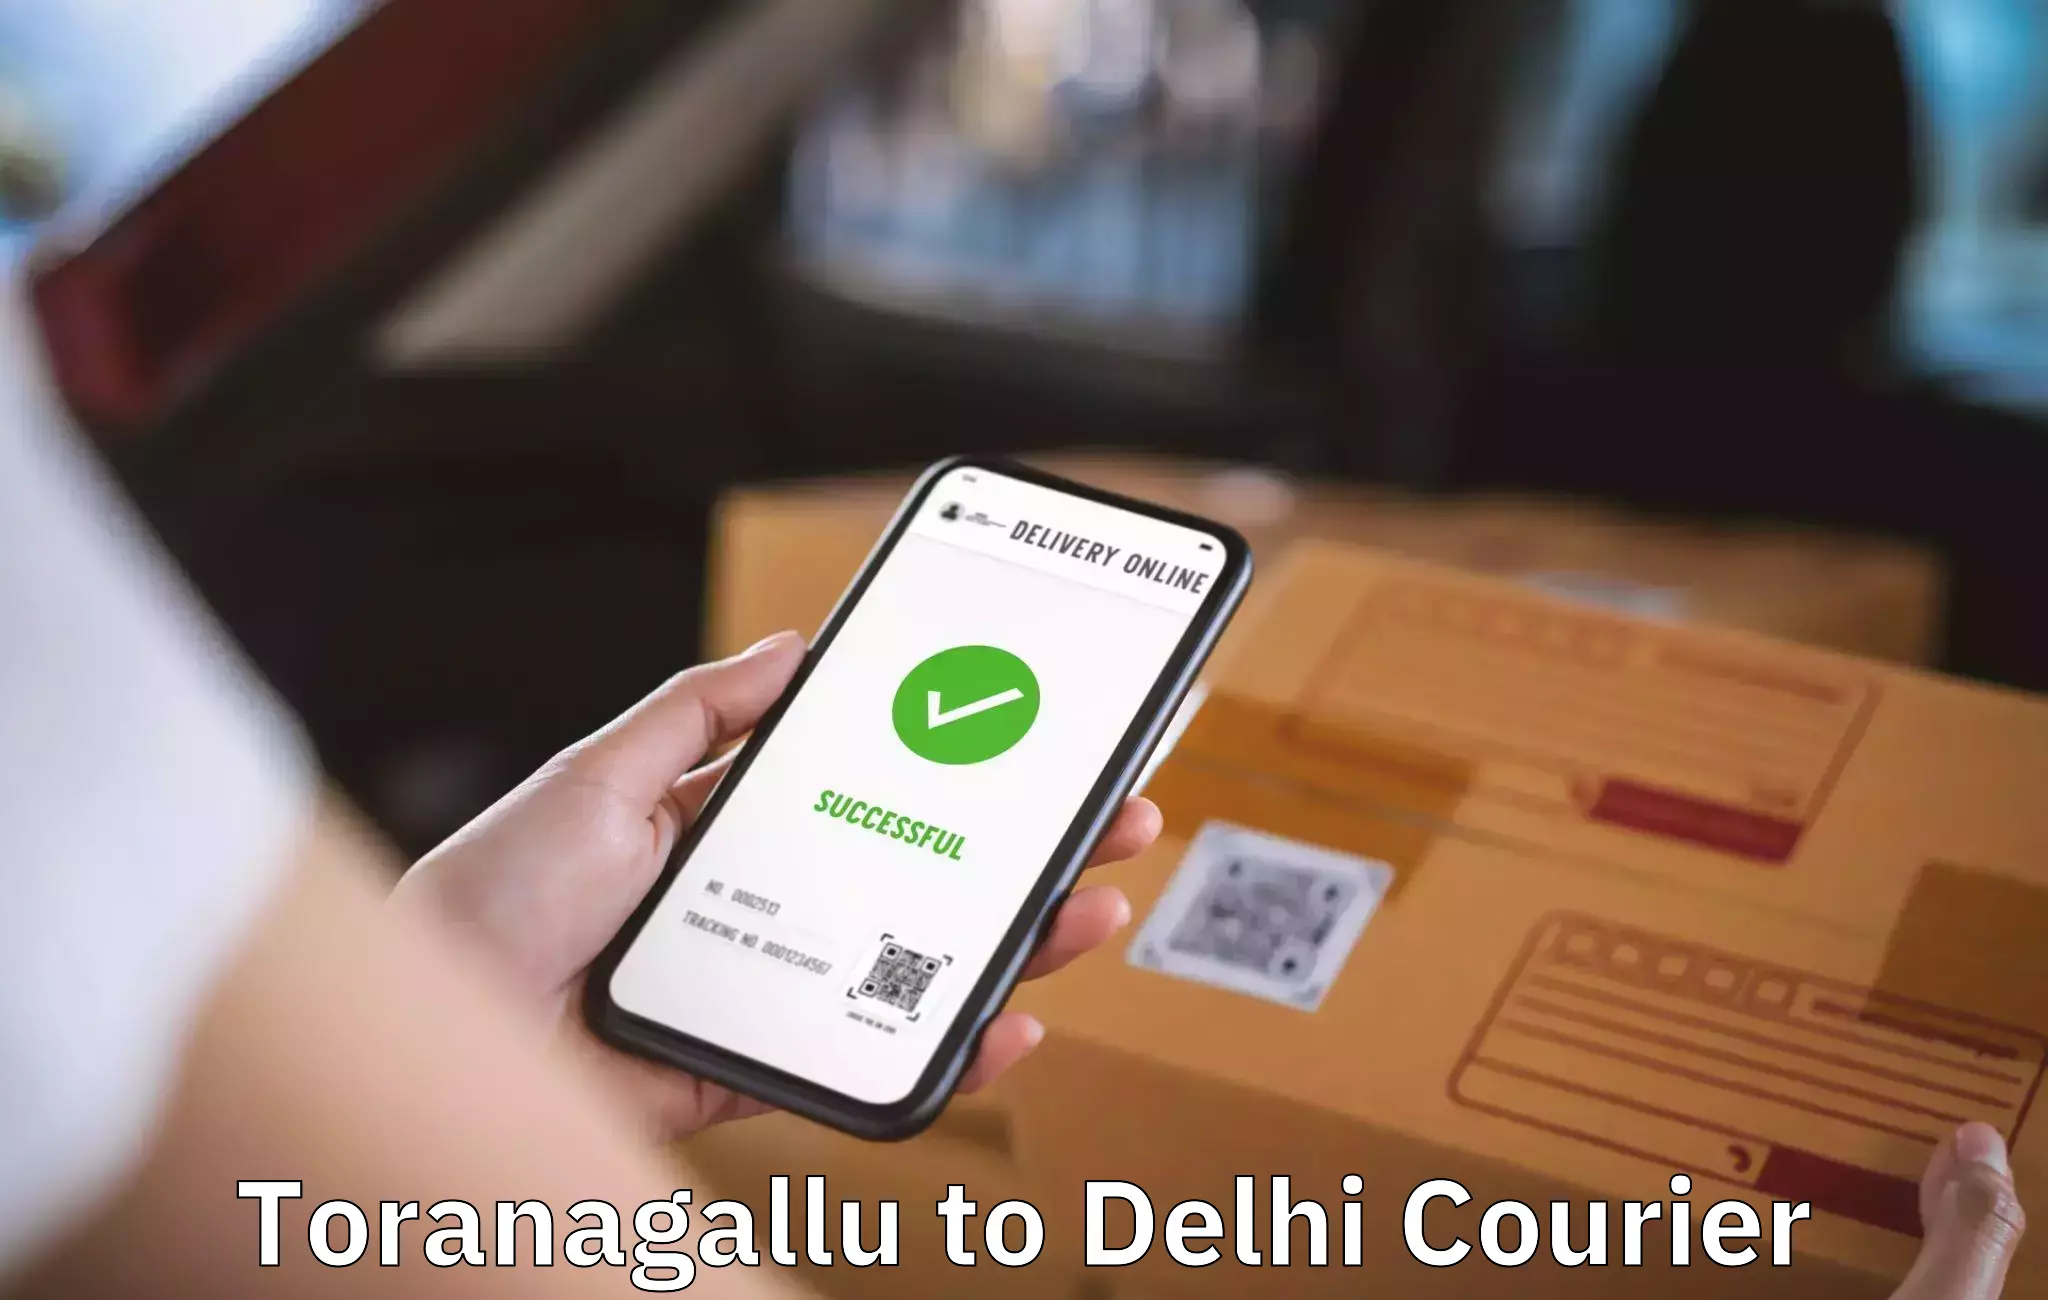 Furniture delivery service Toranagallu to Delhi